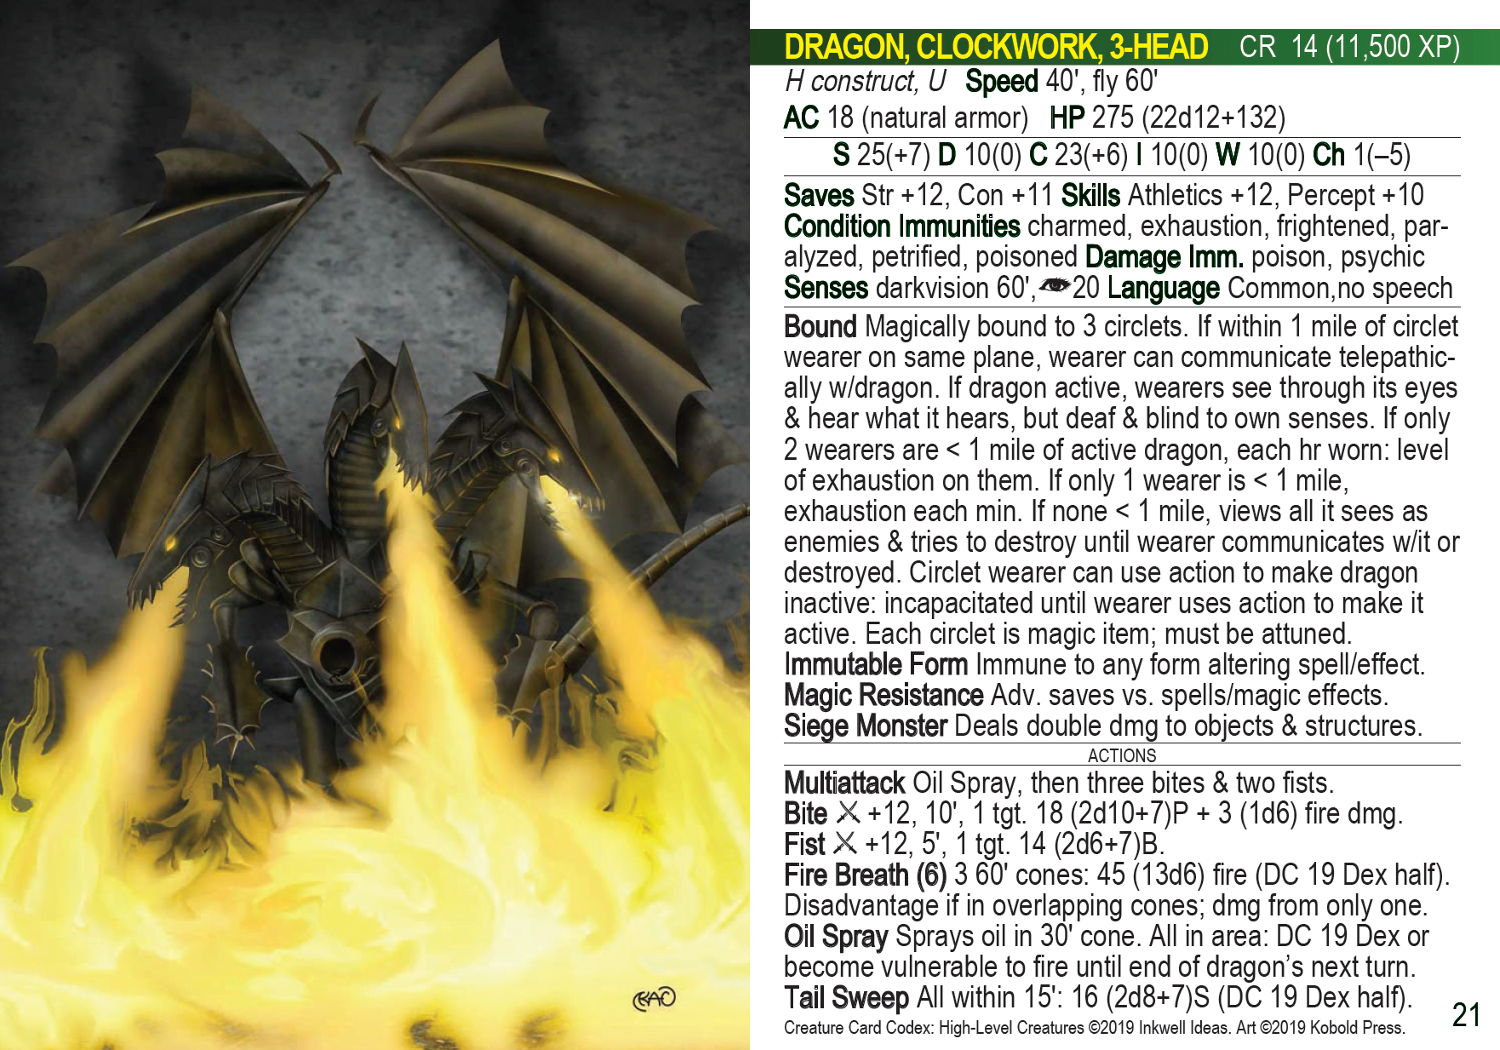 Third Party D&D: Creature Codex (Kobold Press) » Old Game Hermit